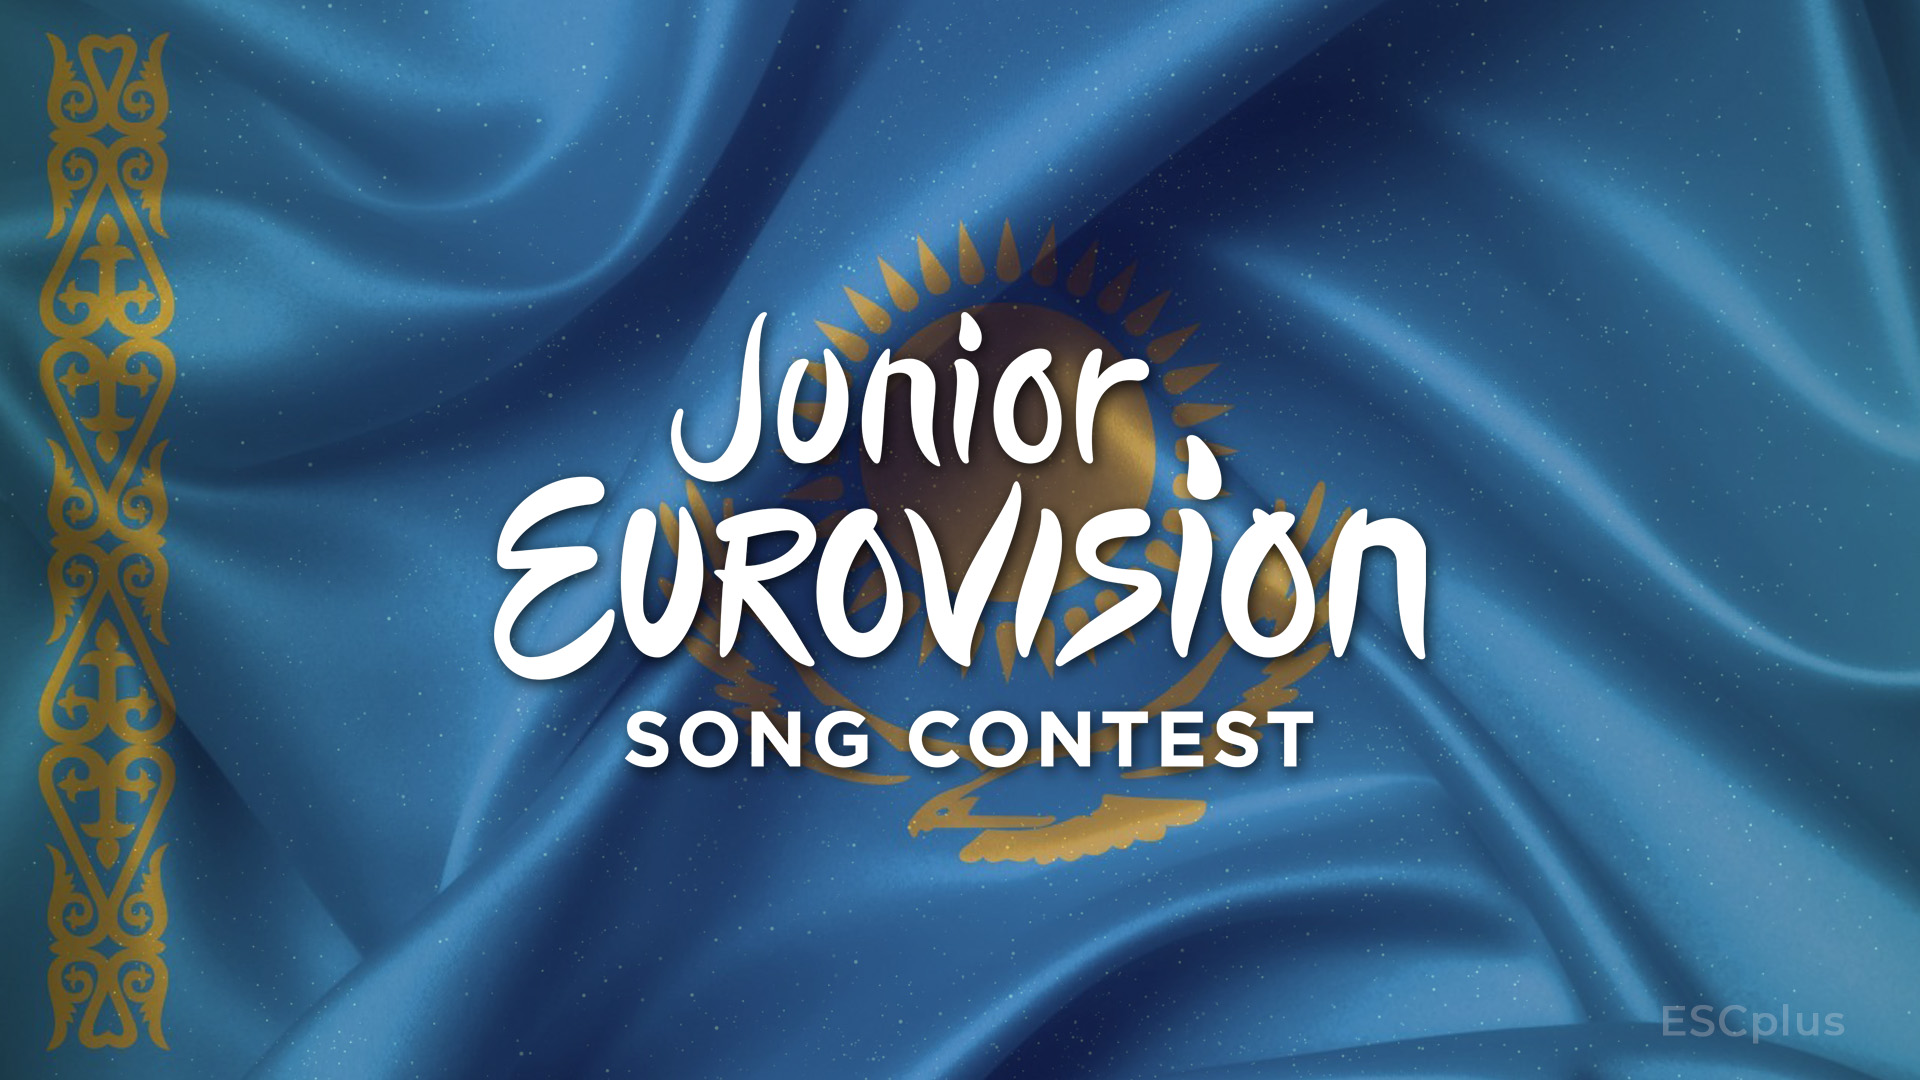 Kazajistán presenta los 10 finalistas que participarán en su preselección para Eurovisión Junior 2021